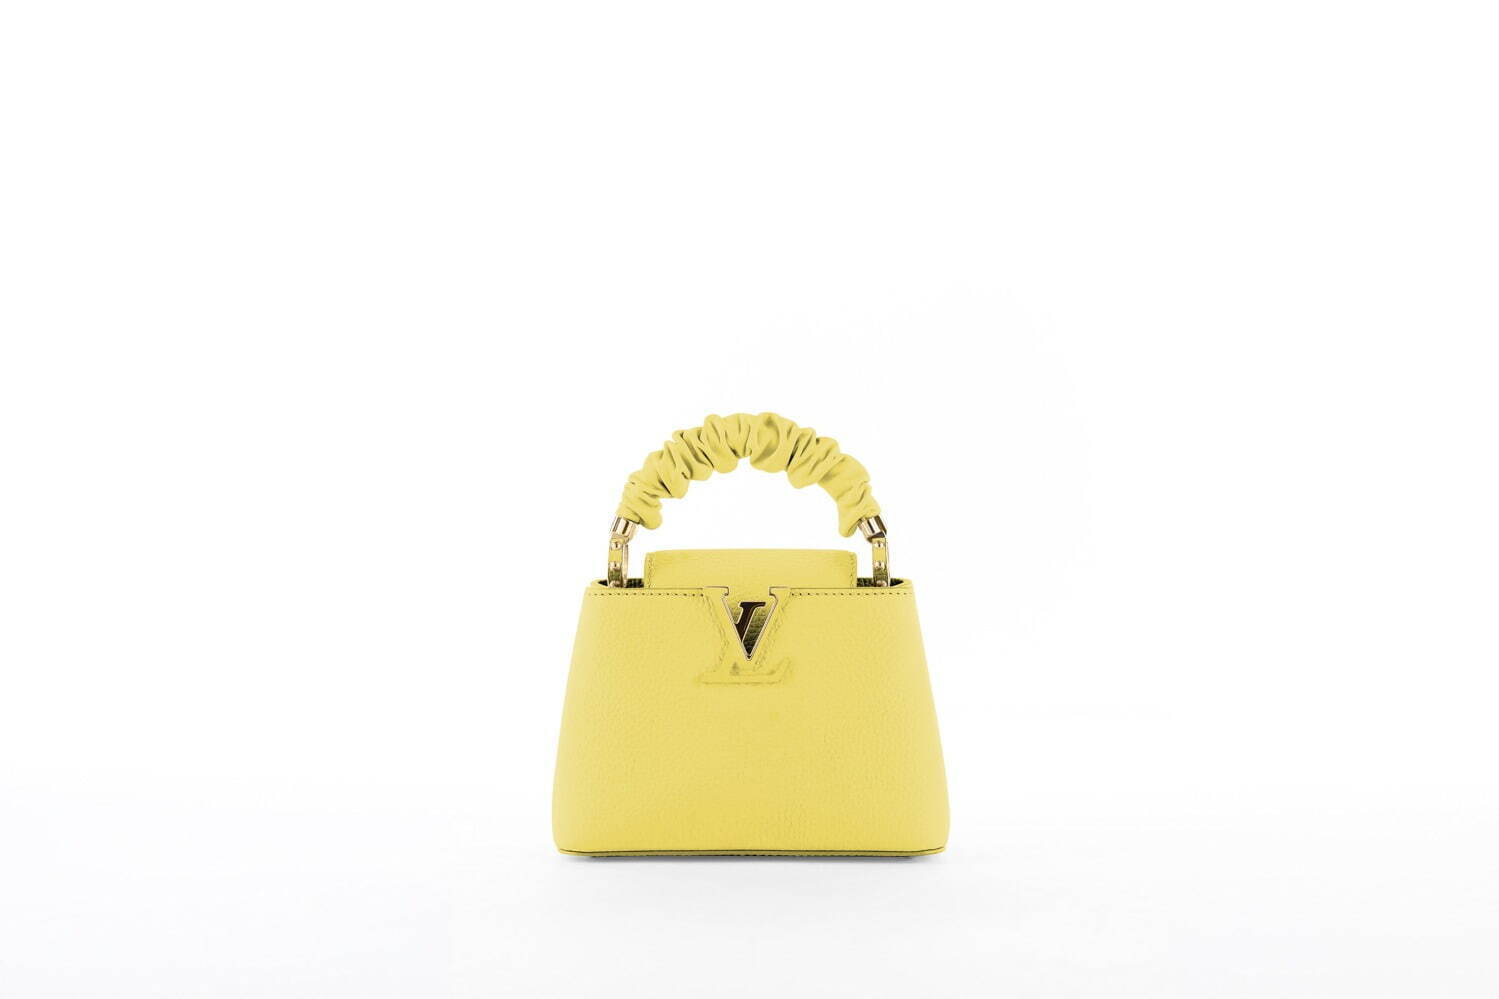 ルイ ヴィトンの新作バッグ カプシーヌ シュシュ から着想したハンドル 淡いカラーで ファッションプレス